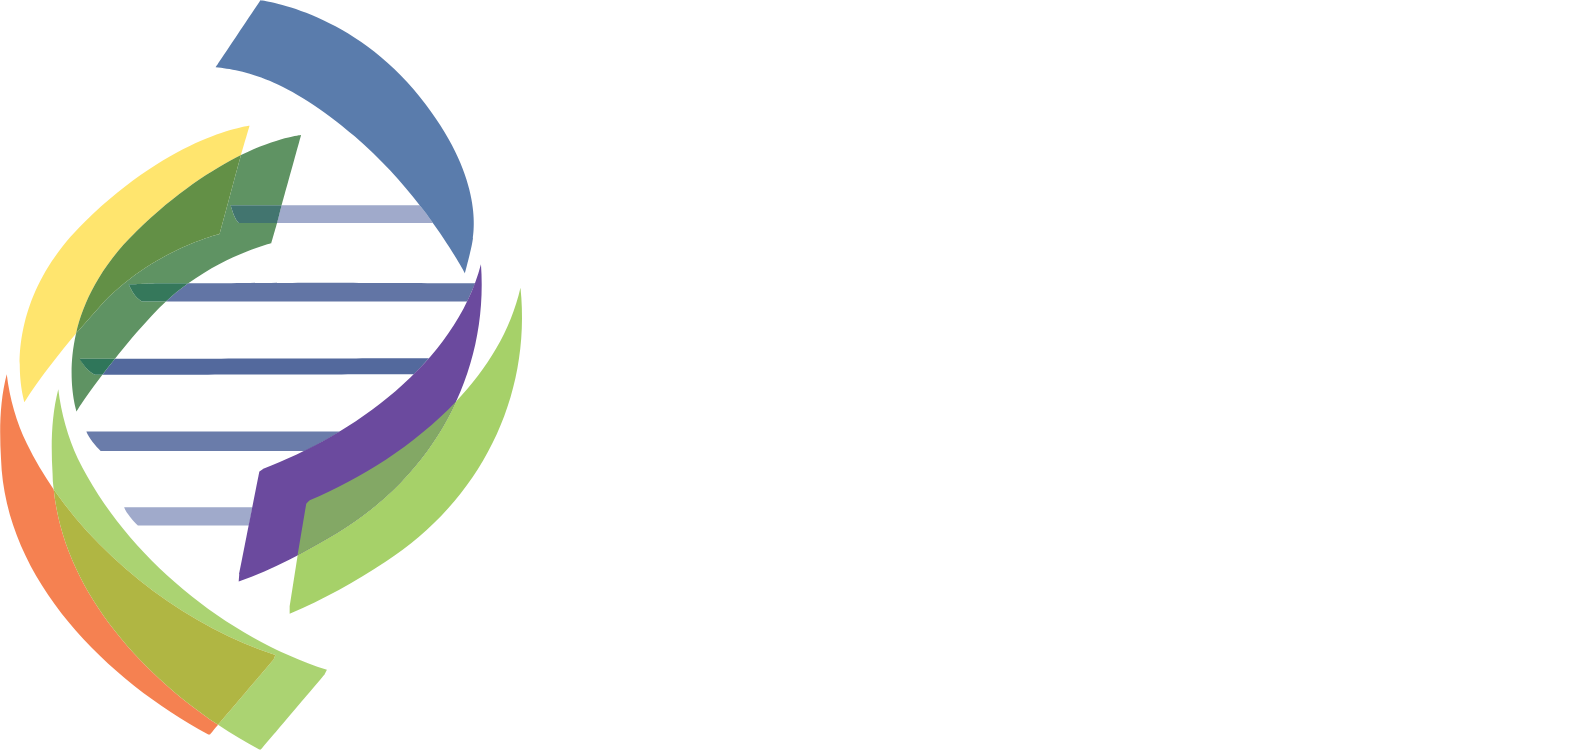 Enzo Biochem logo large for dark backgrounds (transparent PNG)